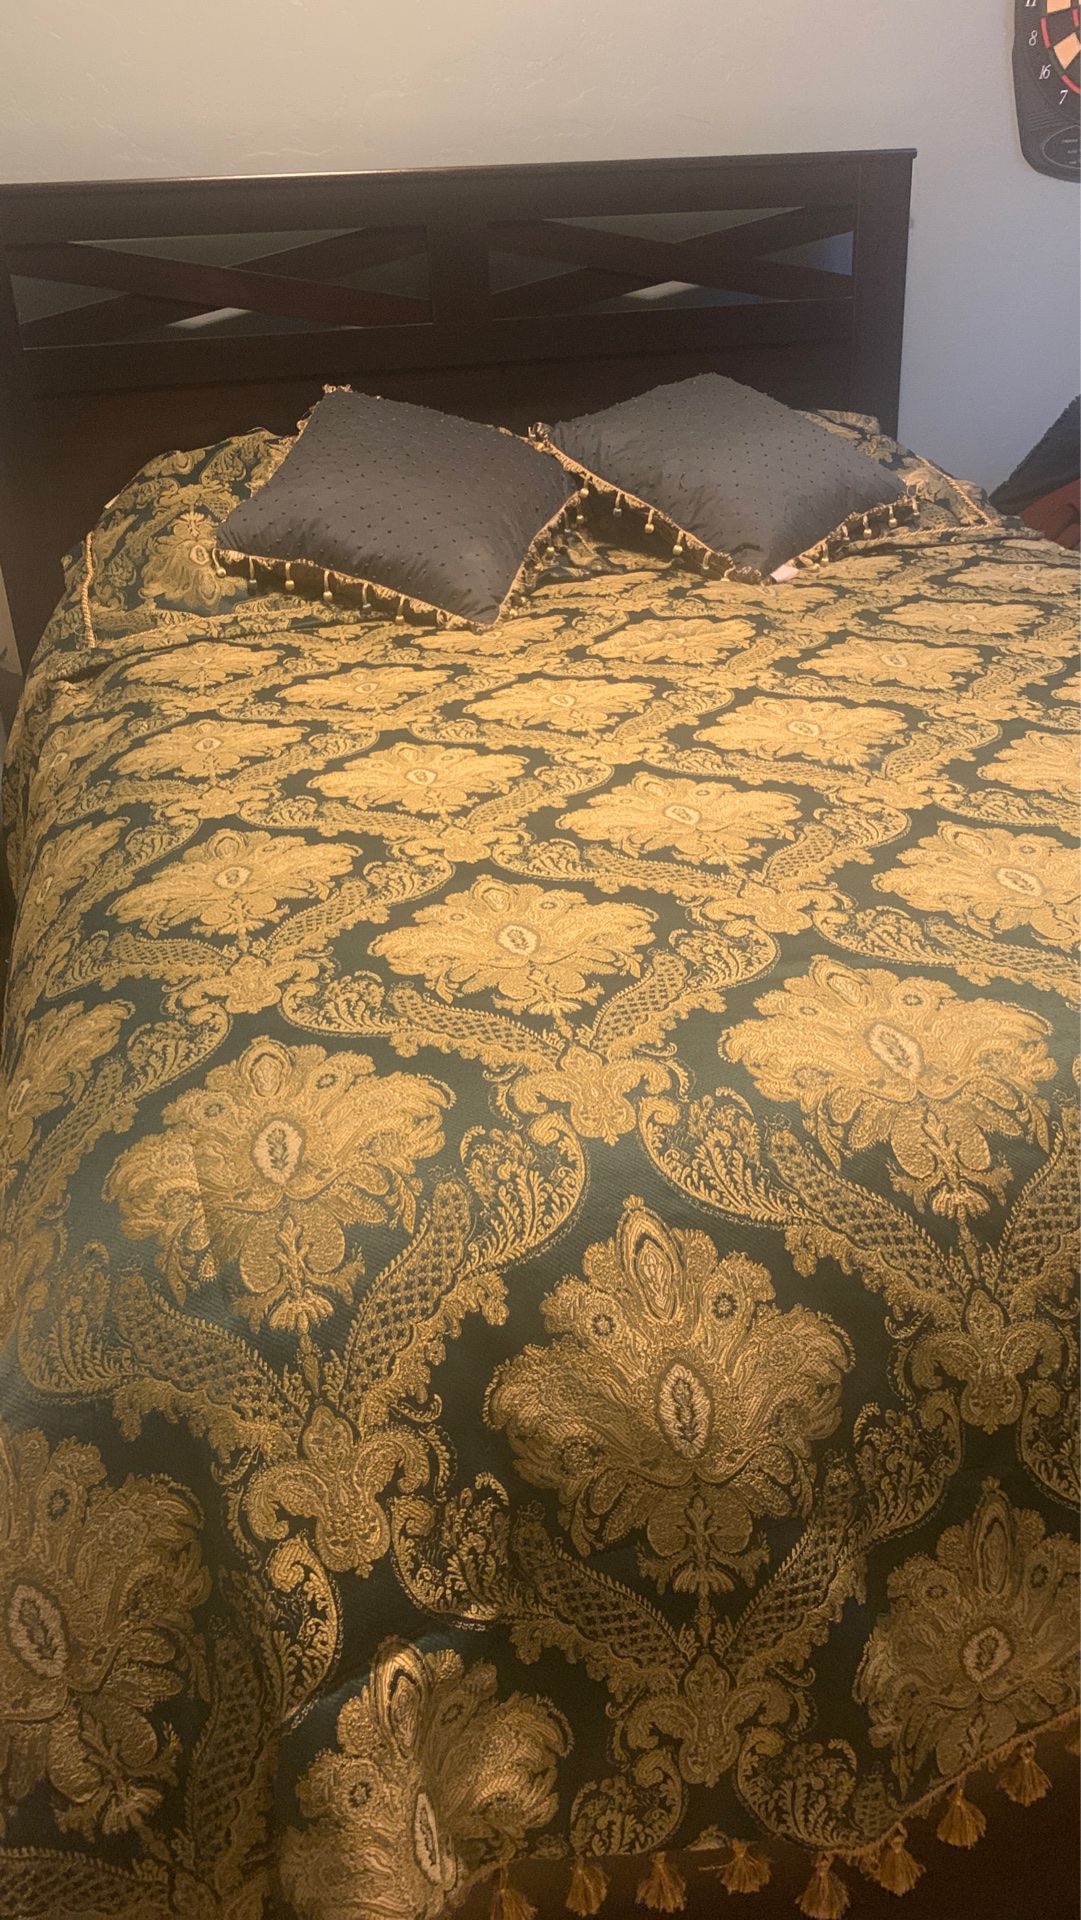 Queen Comforter Set